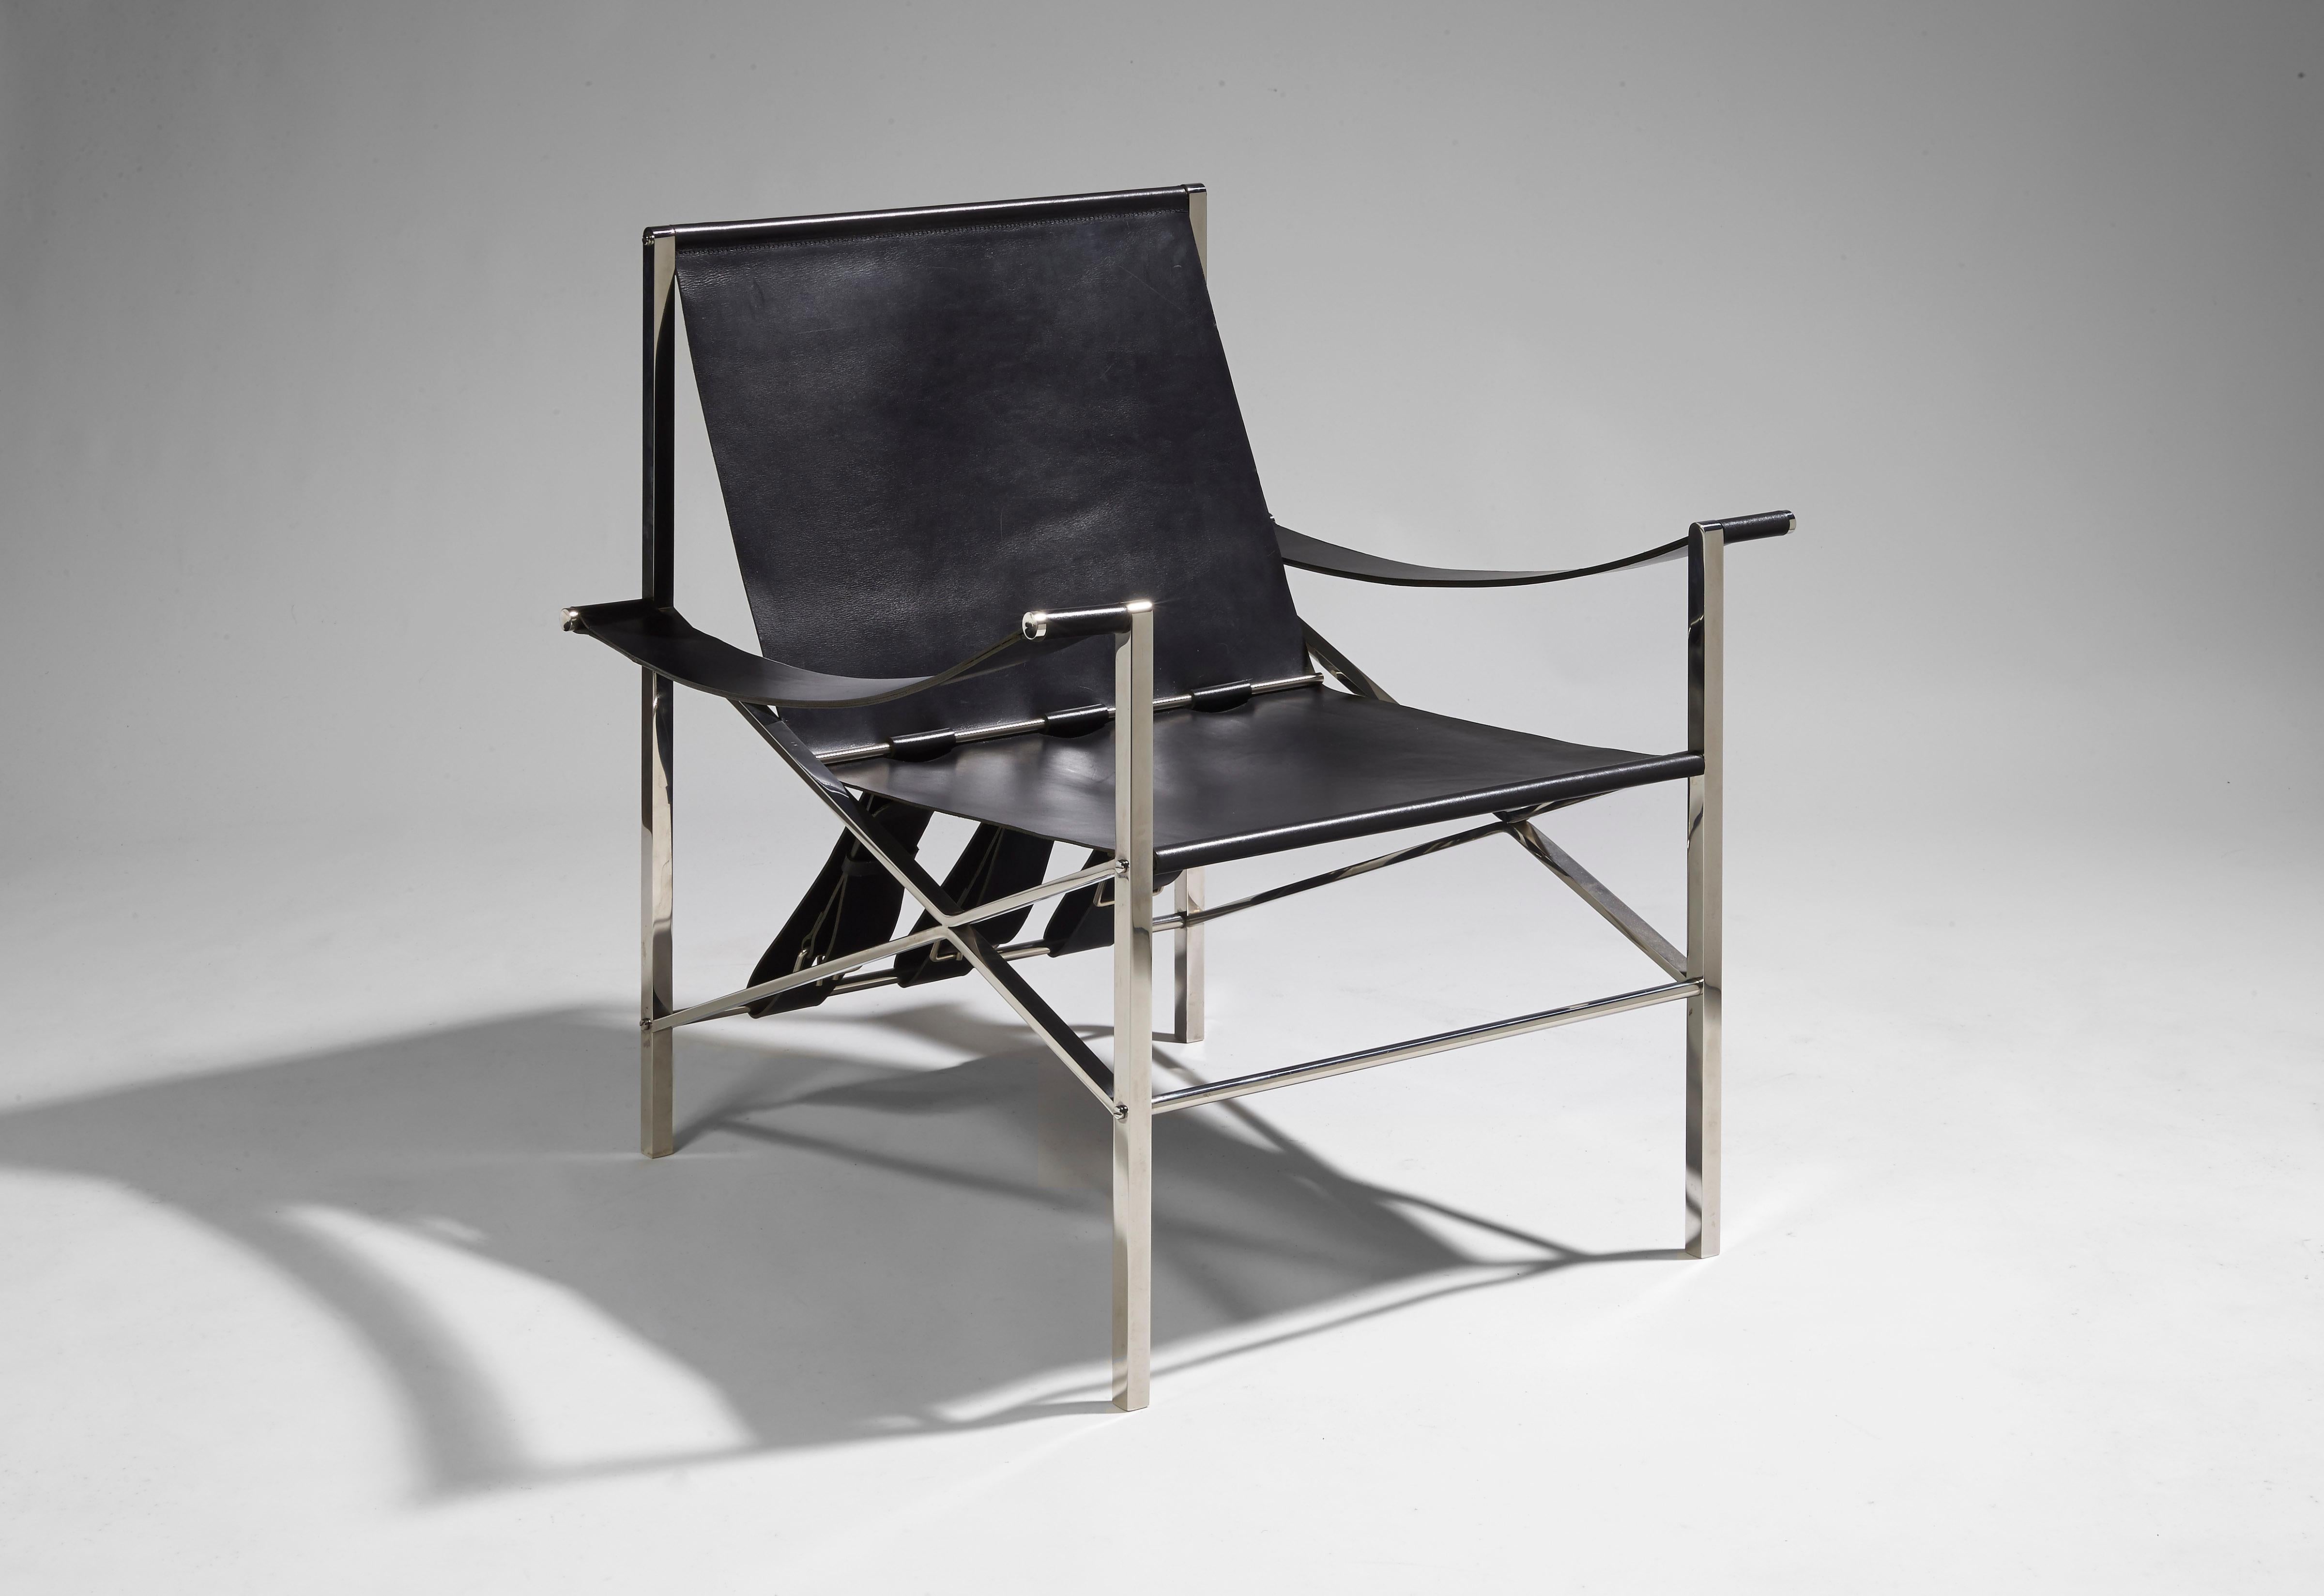 Dieser Sessel ist eine zeitgenössische Ausgabe des Sessels De Pont, der 1965 von dem berühmten Designer Maxime Old entworfen wurde. Ursprünglich wurde dieser Sessel für die Bank der Europäischen Industrie- und Finanzunion in der Rue Gaillon in Paris